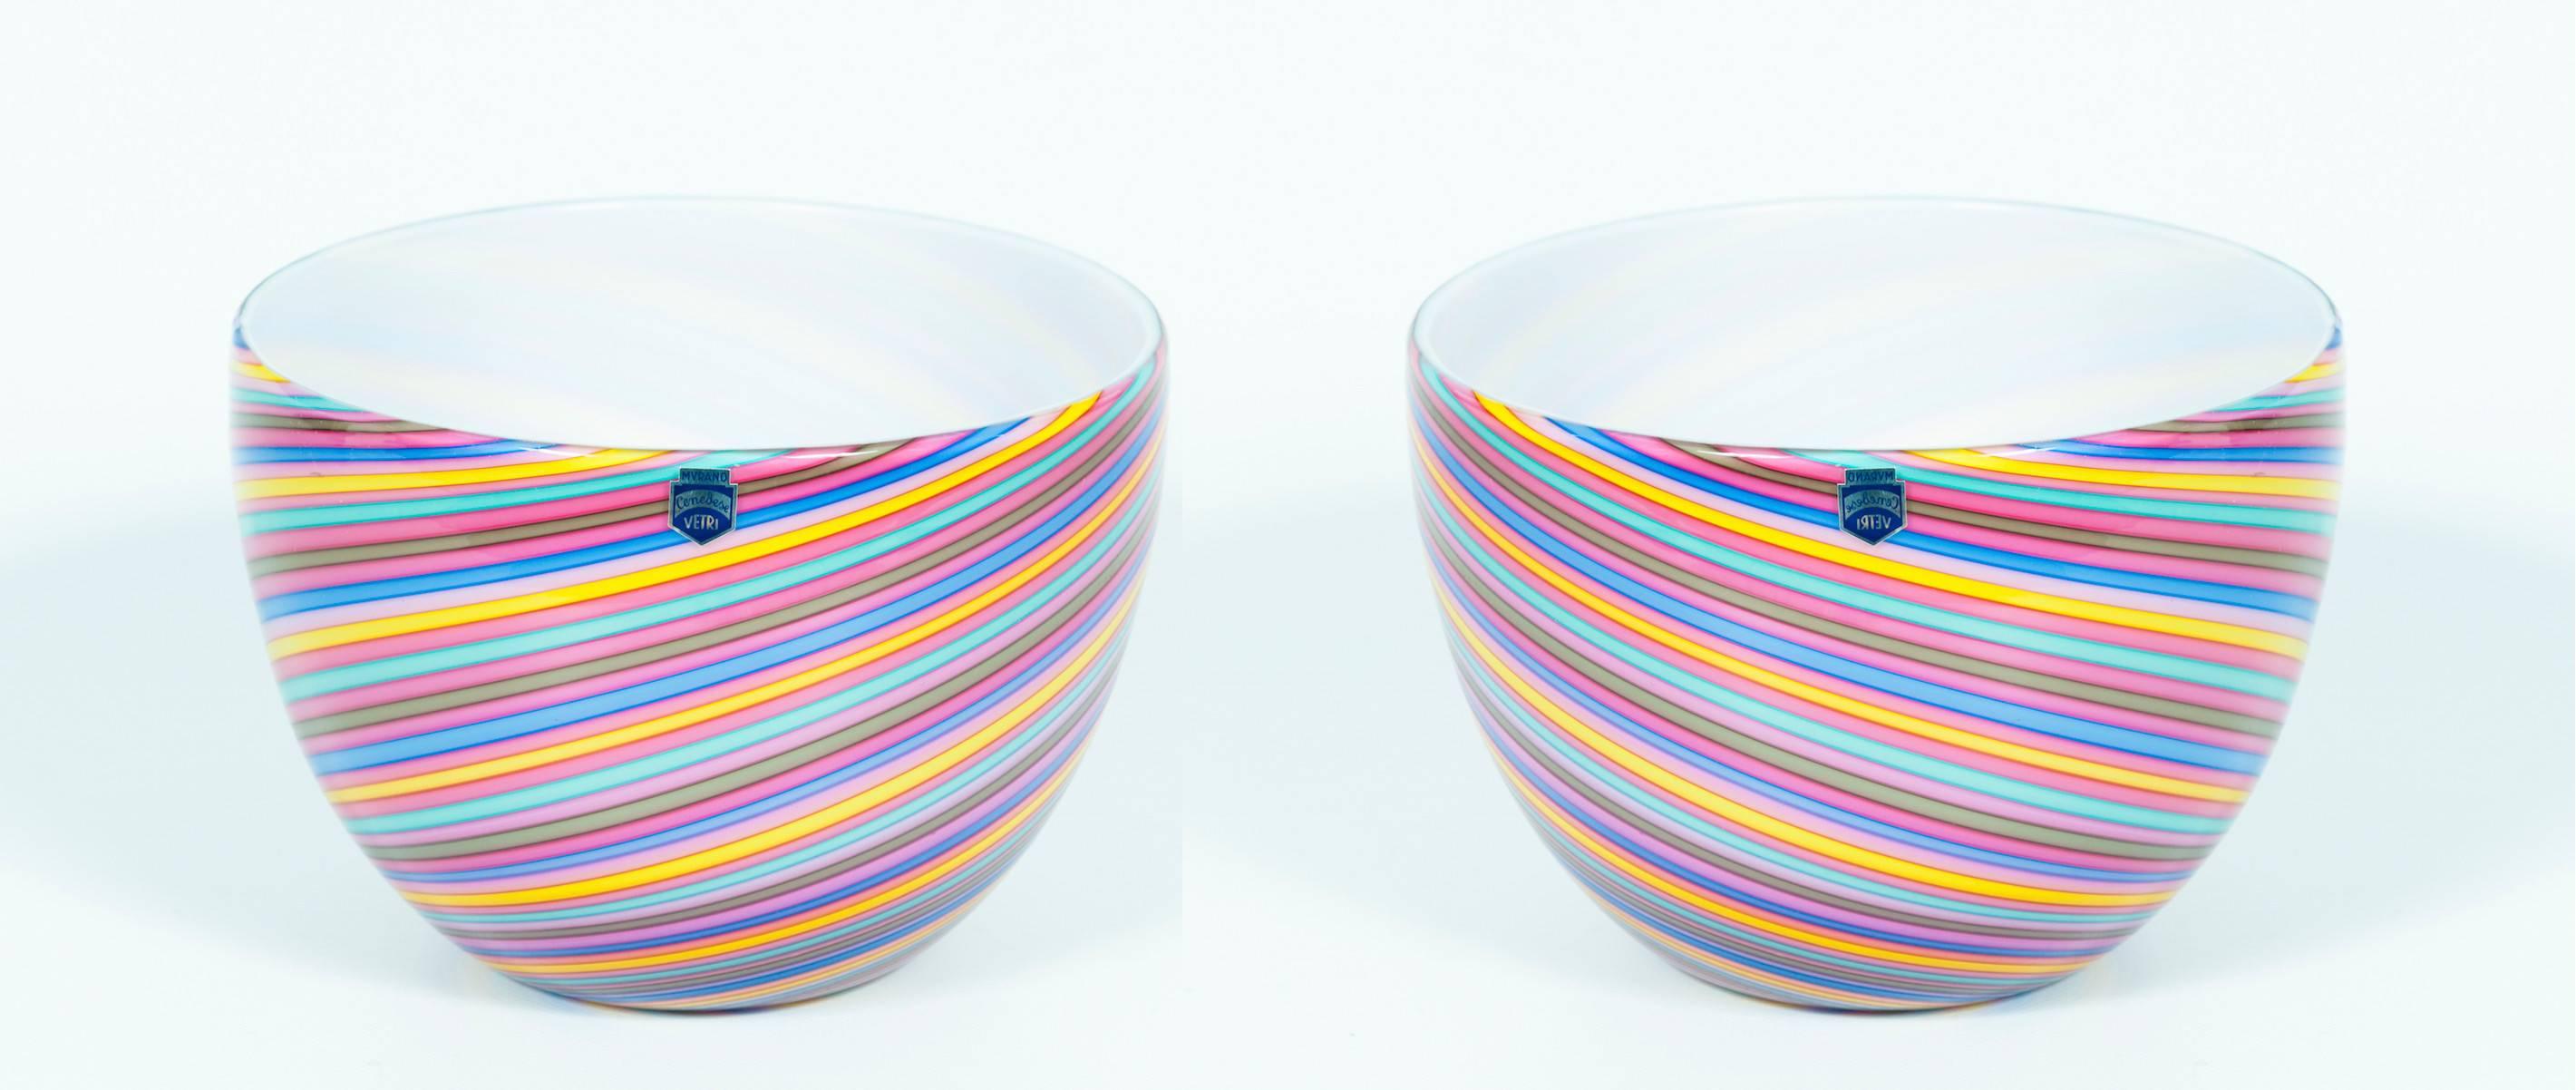 Italien 1970er Jahre Cenedese ein Duo von Regenbogenschalen aus Murano-Glas, die Streifen aufweisen.
Einzigartiges Paar eleganter Schalen mit gedrehten Streifen in rosa Regenbogenfarben, in sehr gutem Originalzustand, wie auf den Bildern